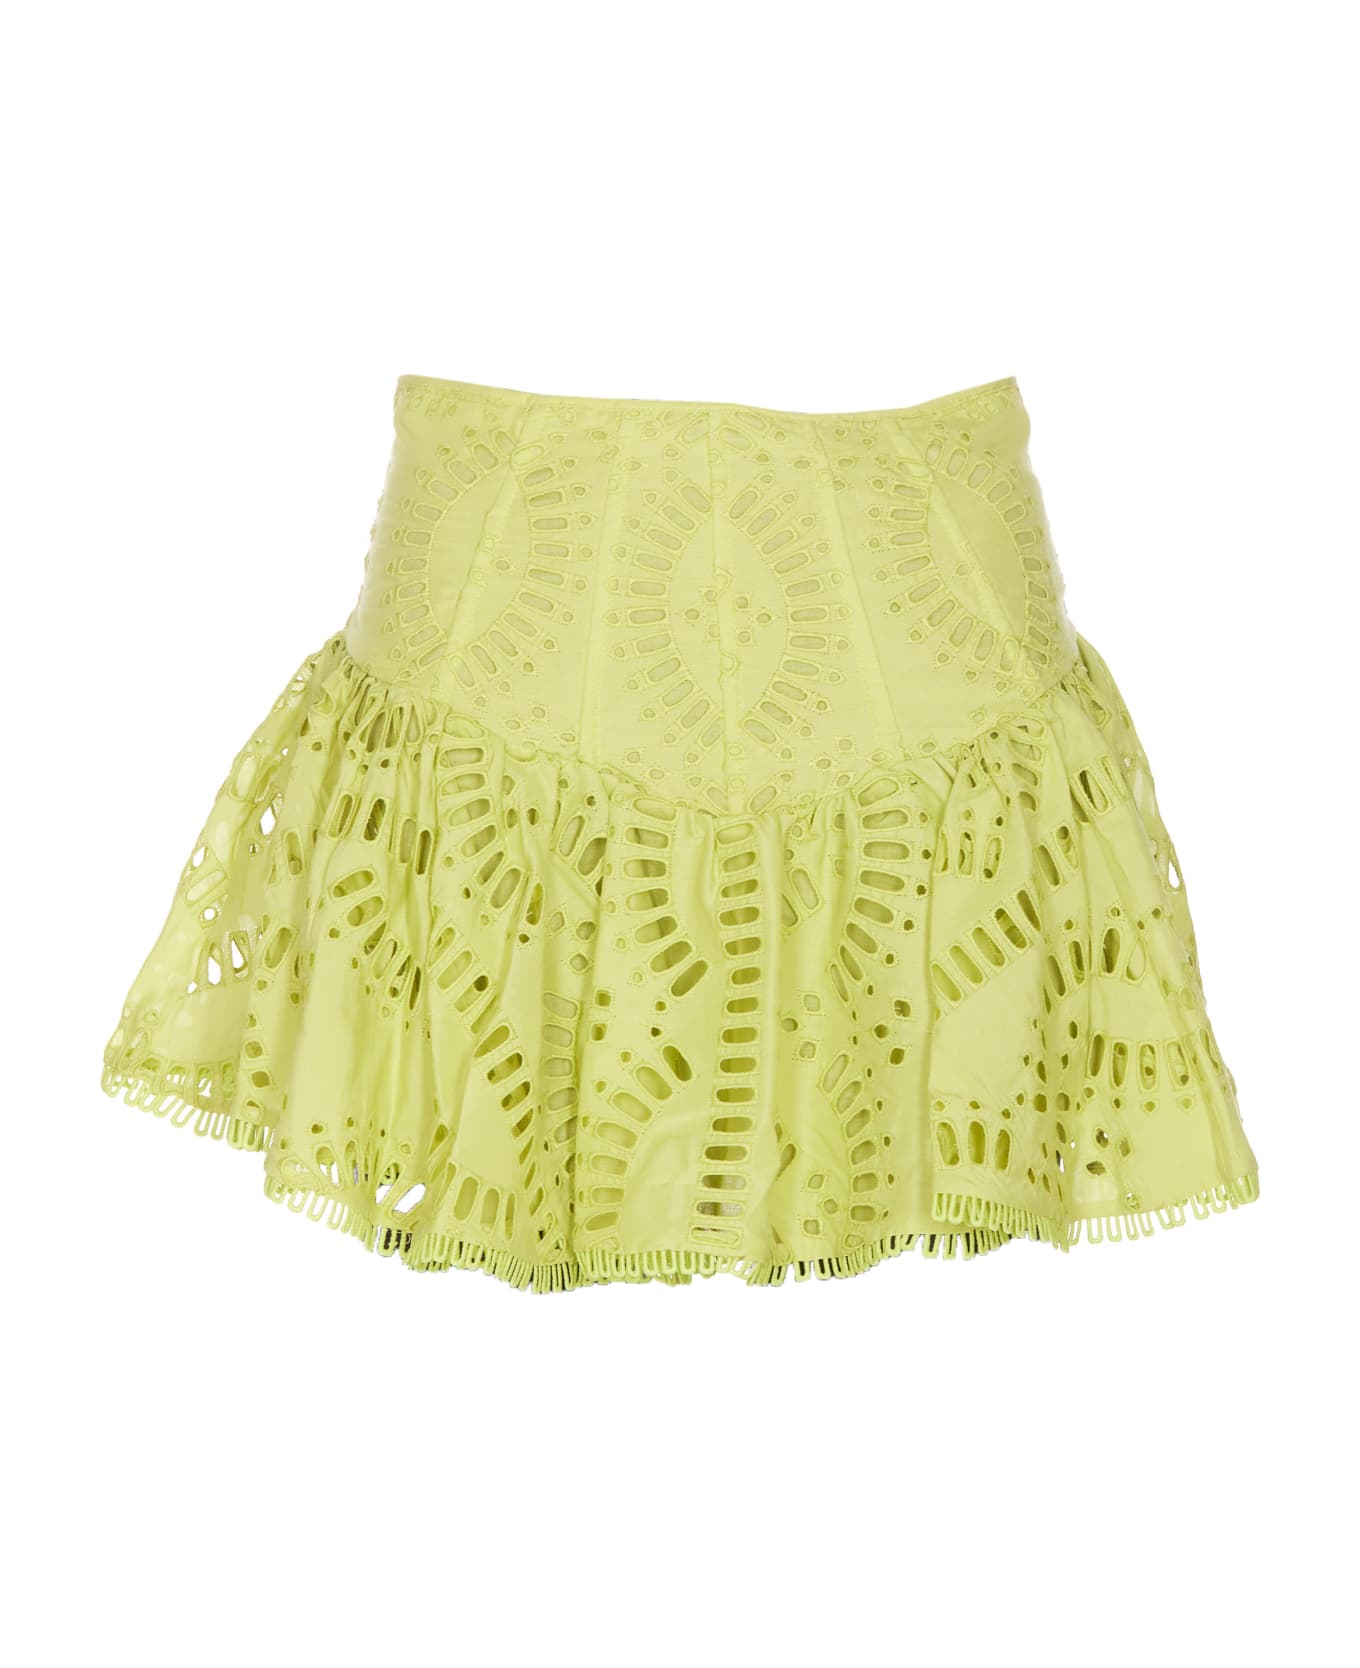 Charo Ruiz Favik Short Skirt - Yellow